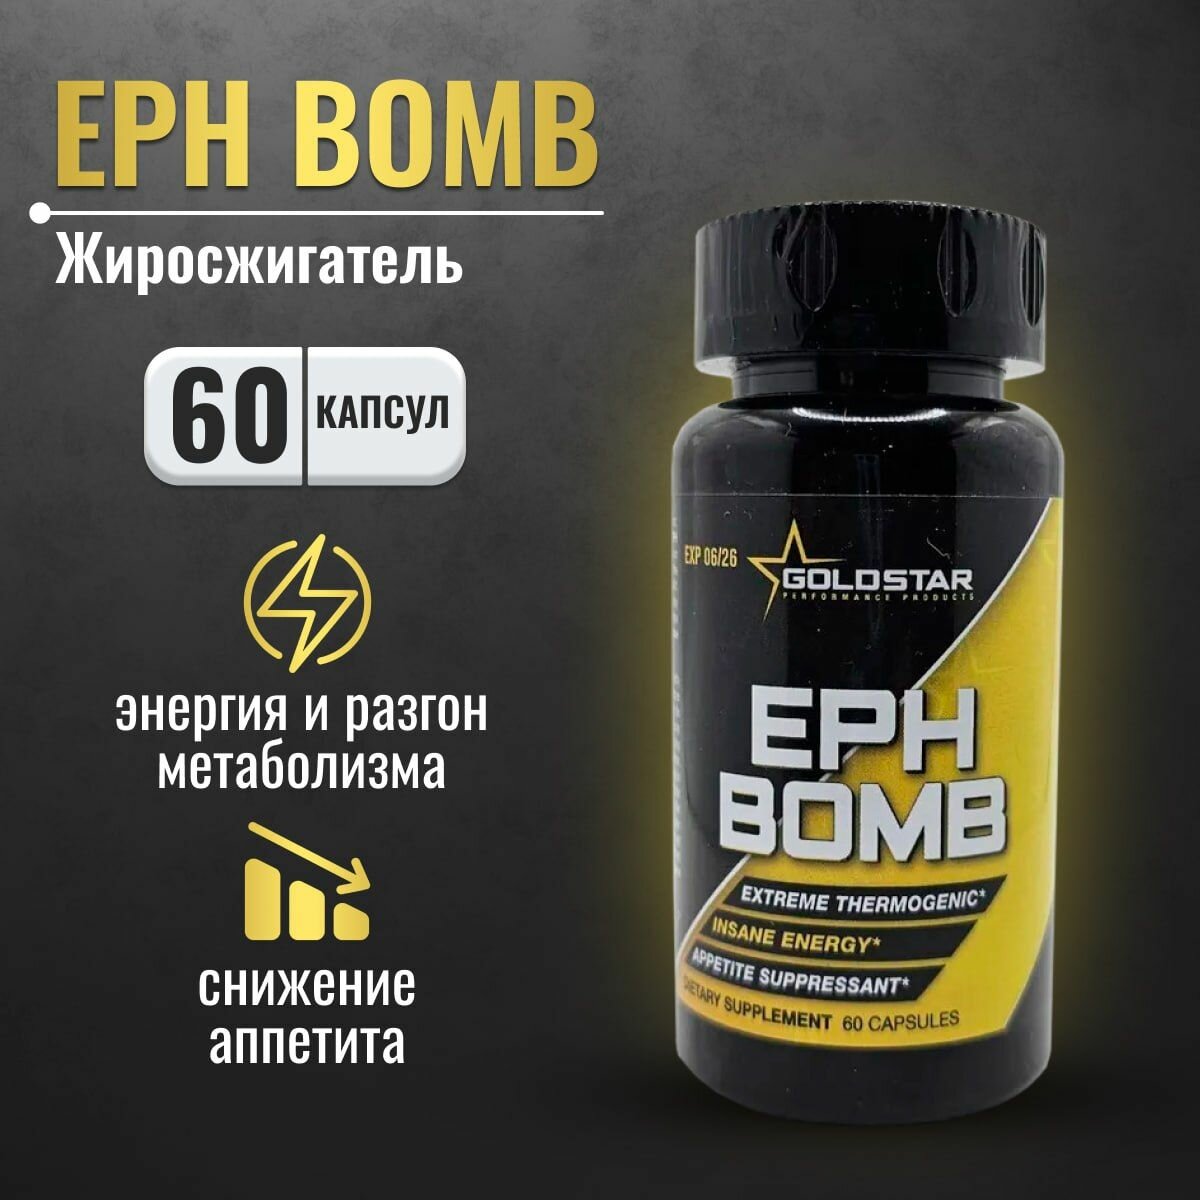 Жиросжигатель Gold Star EPH BOMB 60 капсул Епх бомб, мощное средство для похудения мужчин и женщин, подавление аппетита